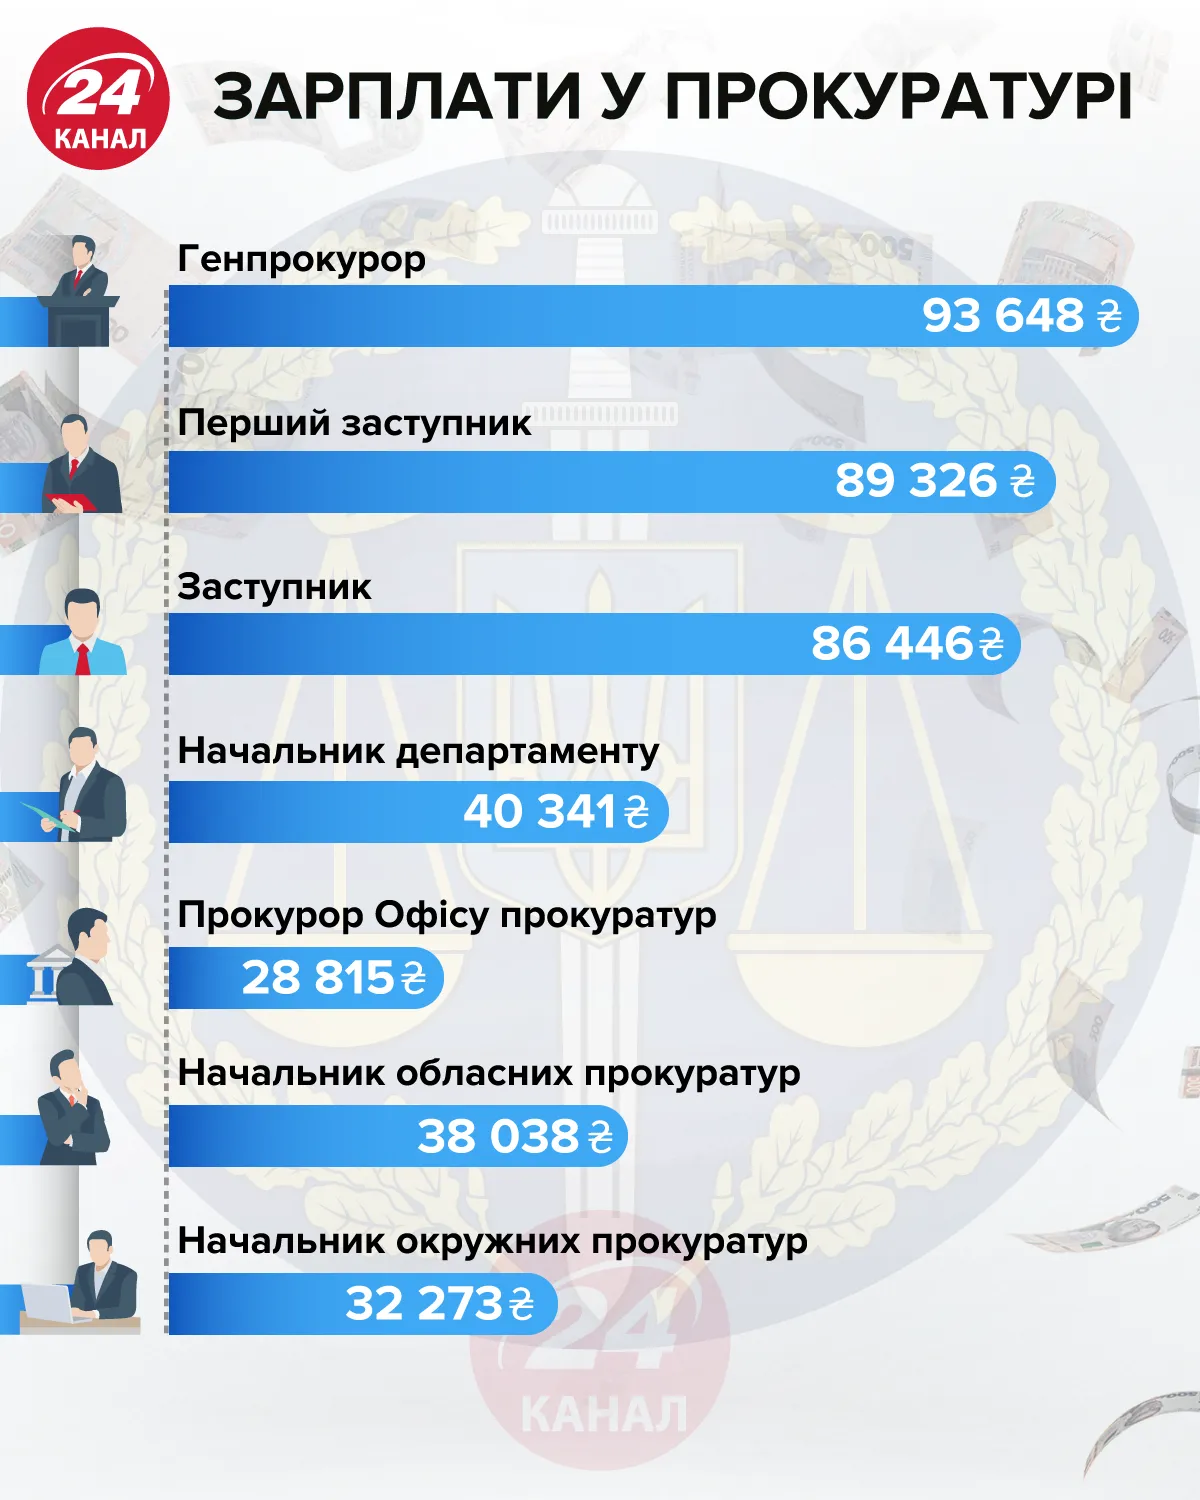 зарплати у прокуратурі інфографіка 24 канал